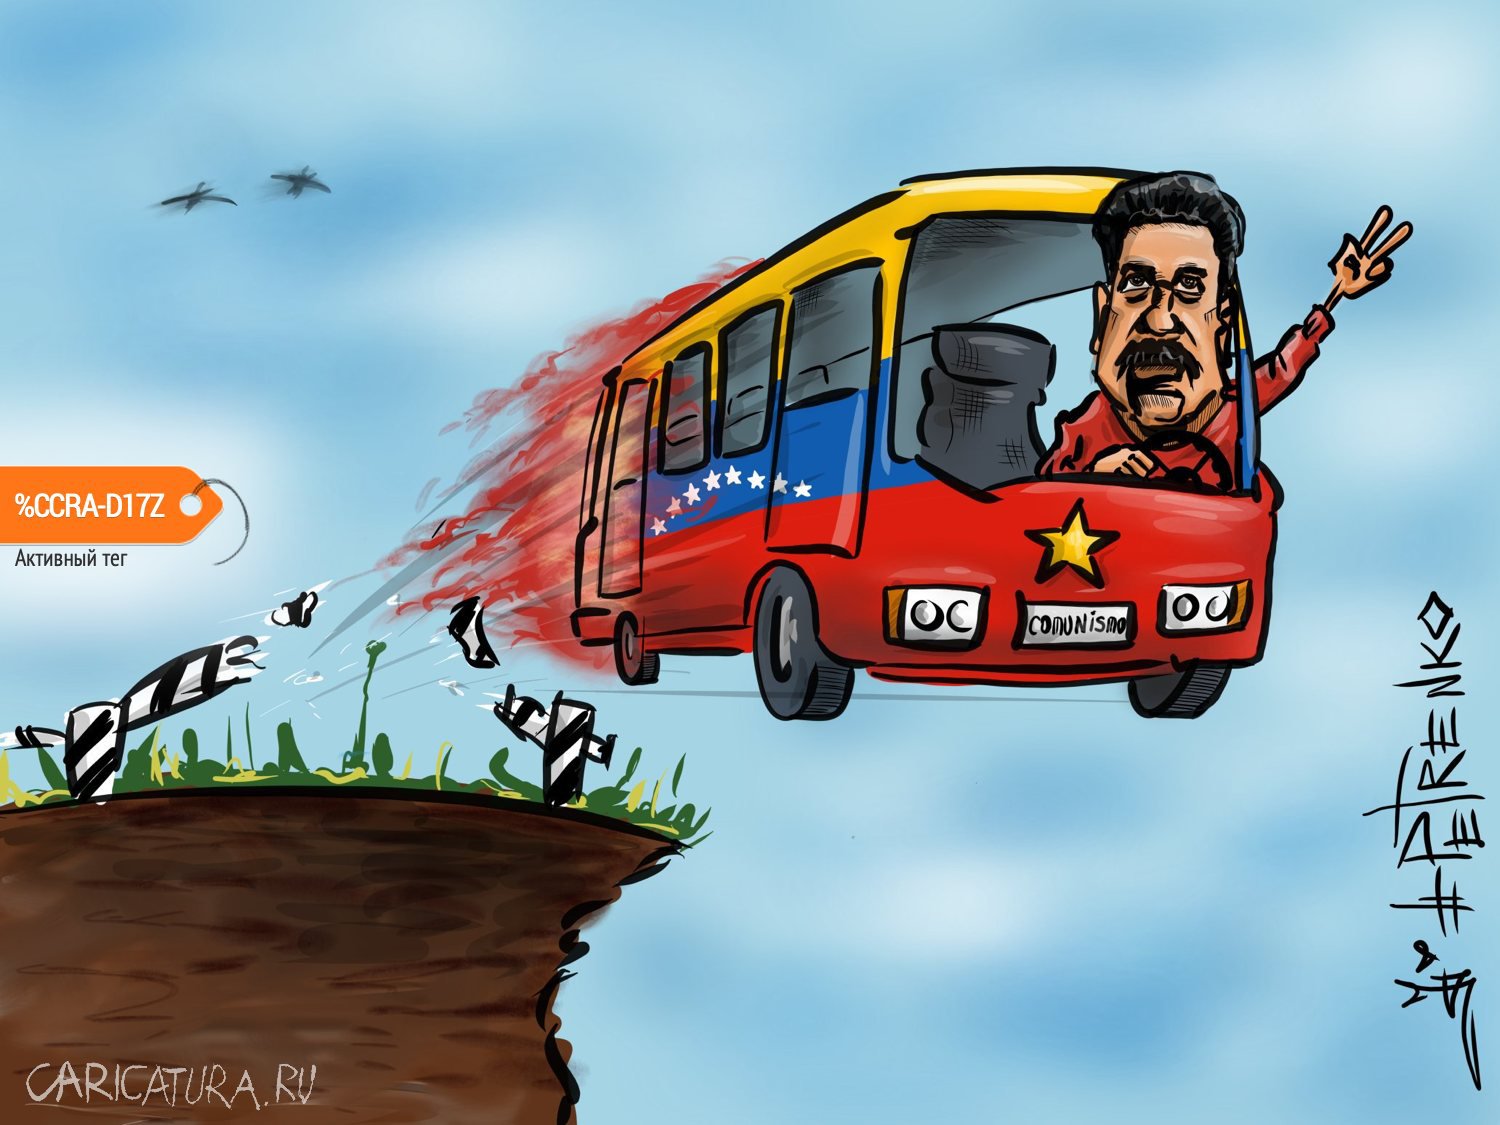 Карикатура "Автобус в огне", Андрей Петренко